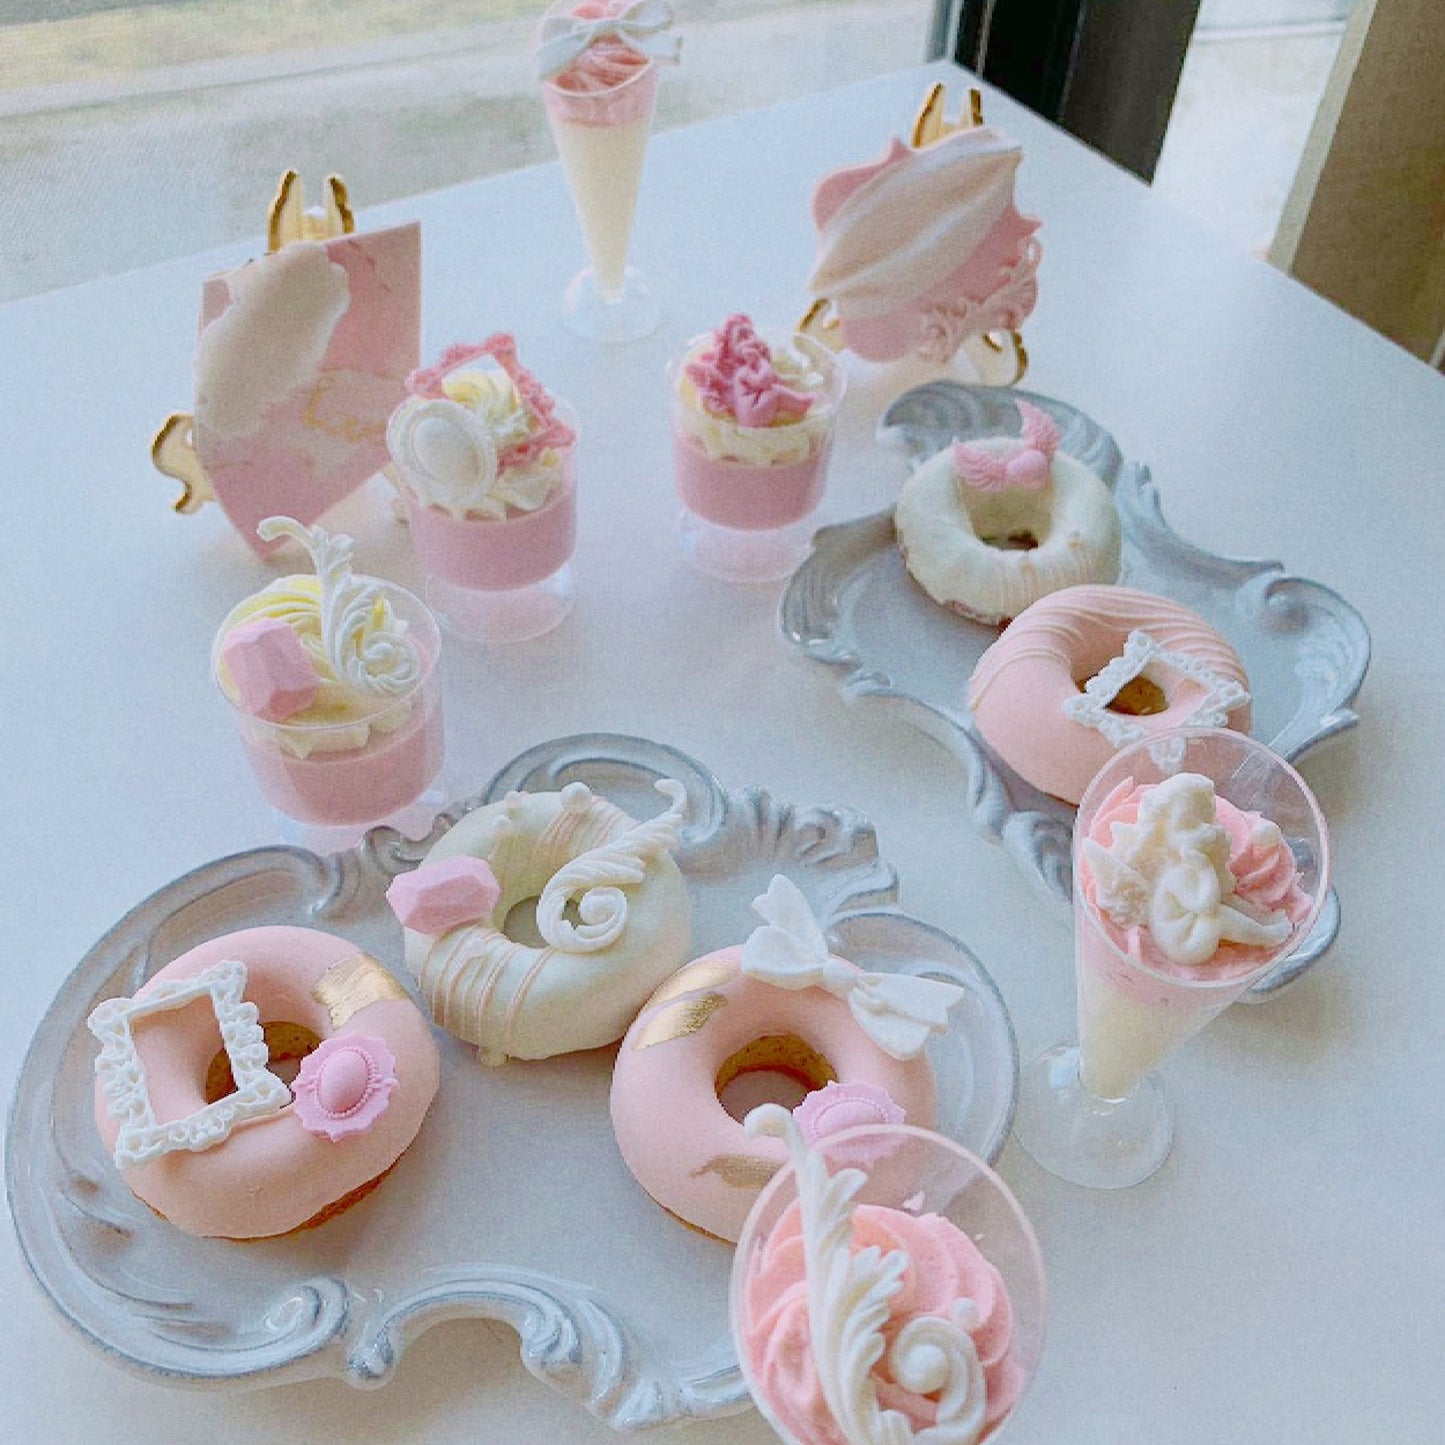 Customized Dessert Combo - Afternoon tea Pink Princess theme